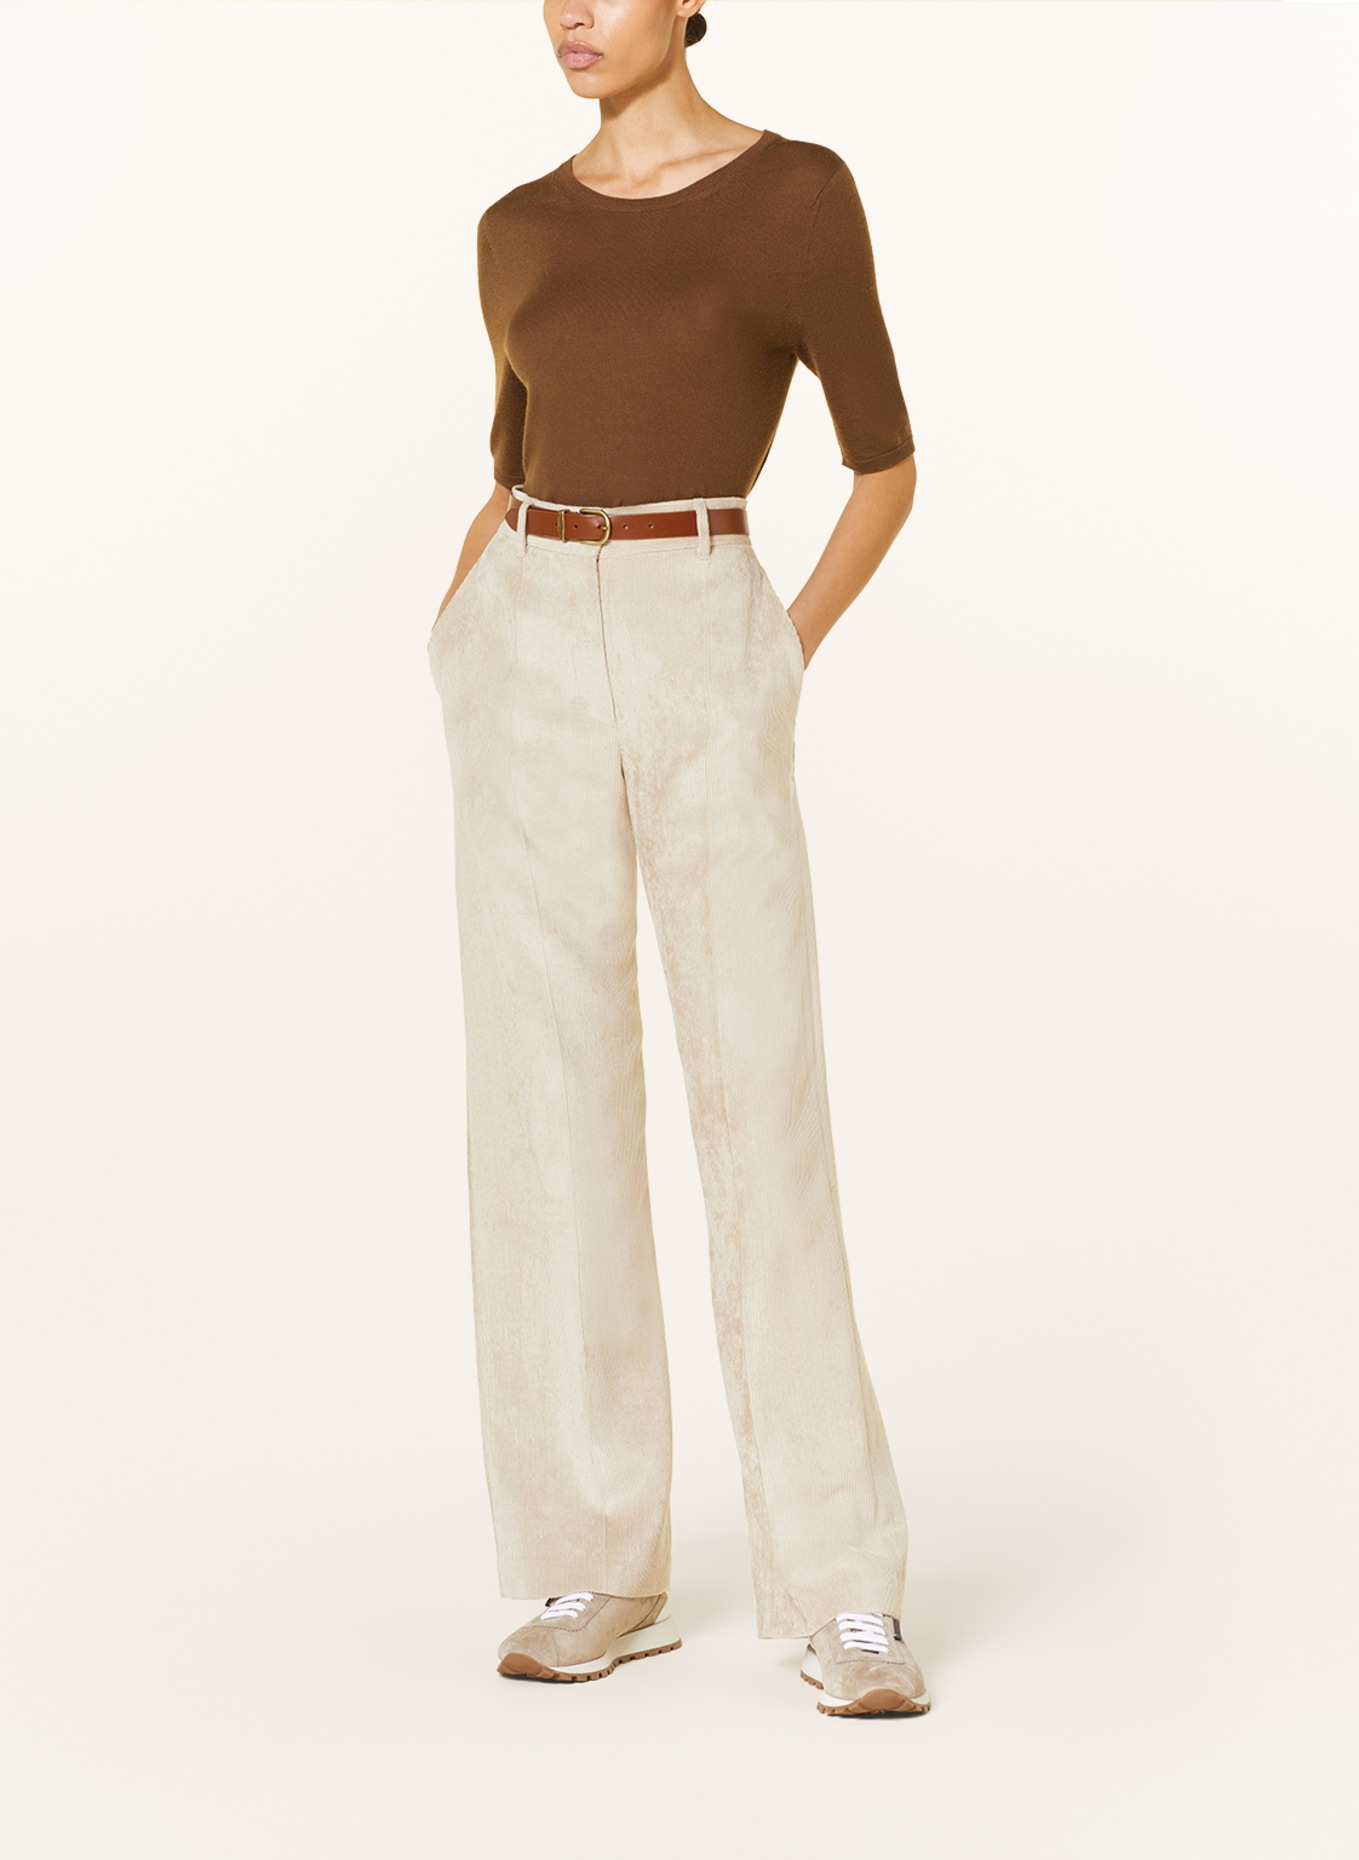 IRIS von ARNIM Knit shirt in cashmere, Color: BROWN (Image 2)